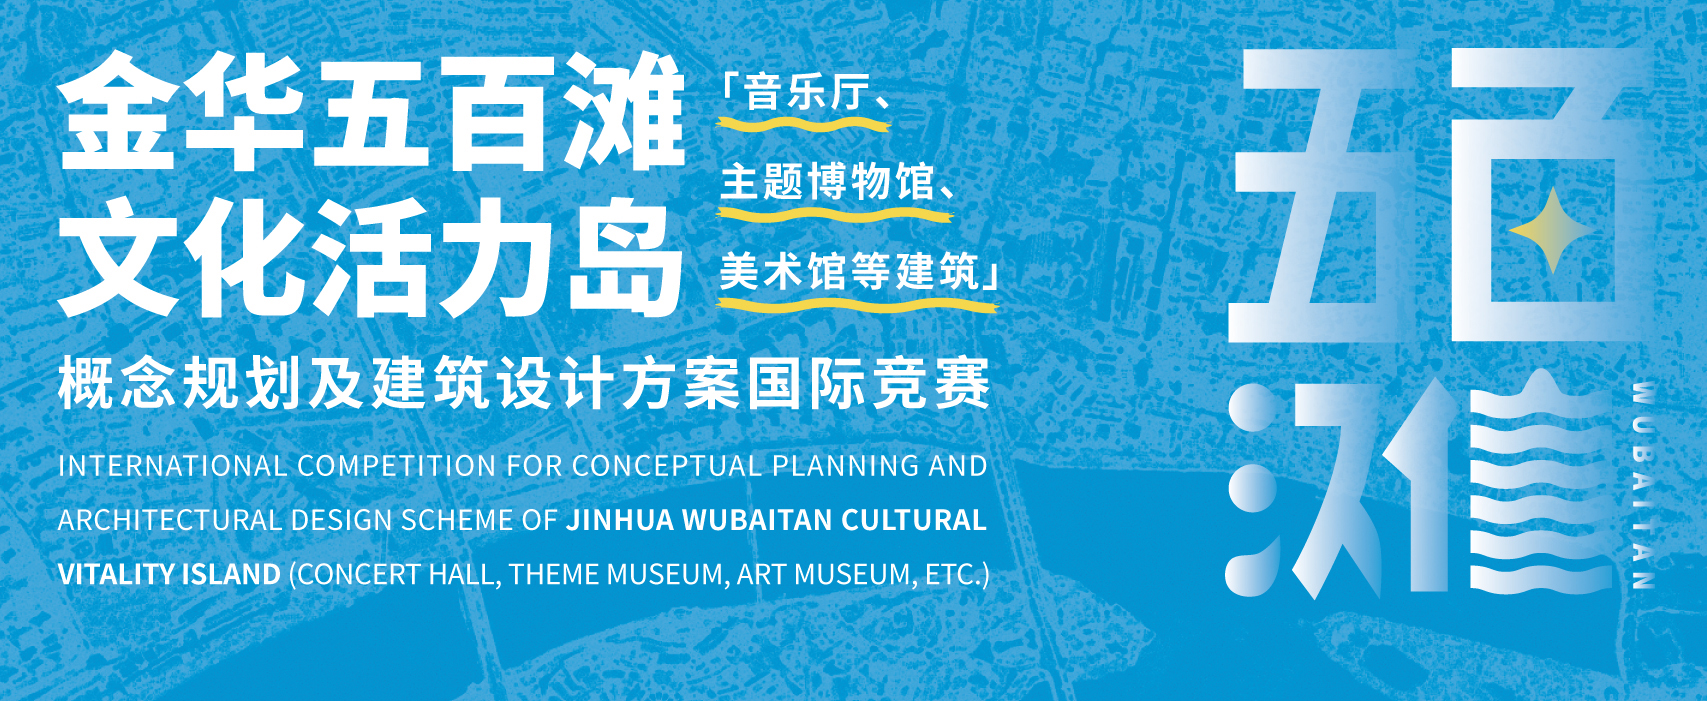 预公告 | 金华五百滩文化活力岛概念规划及建筑设计方案国际竞赛